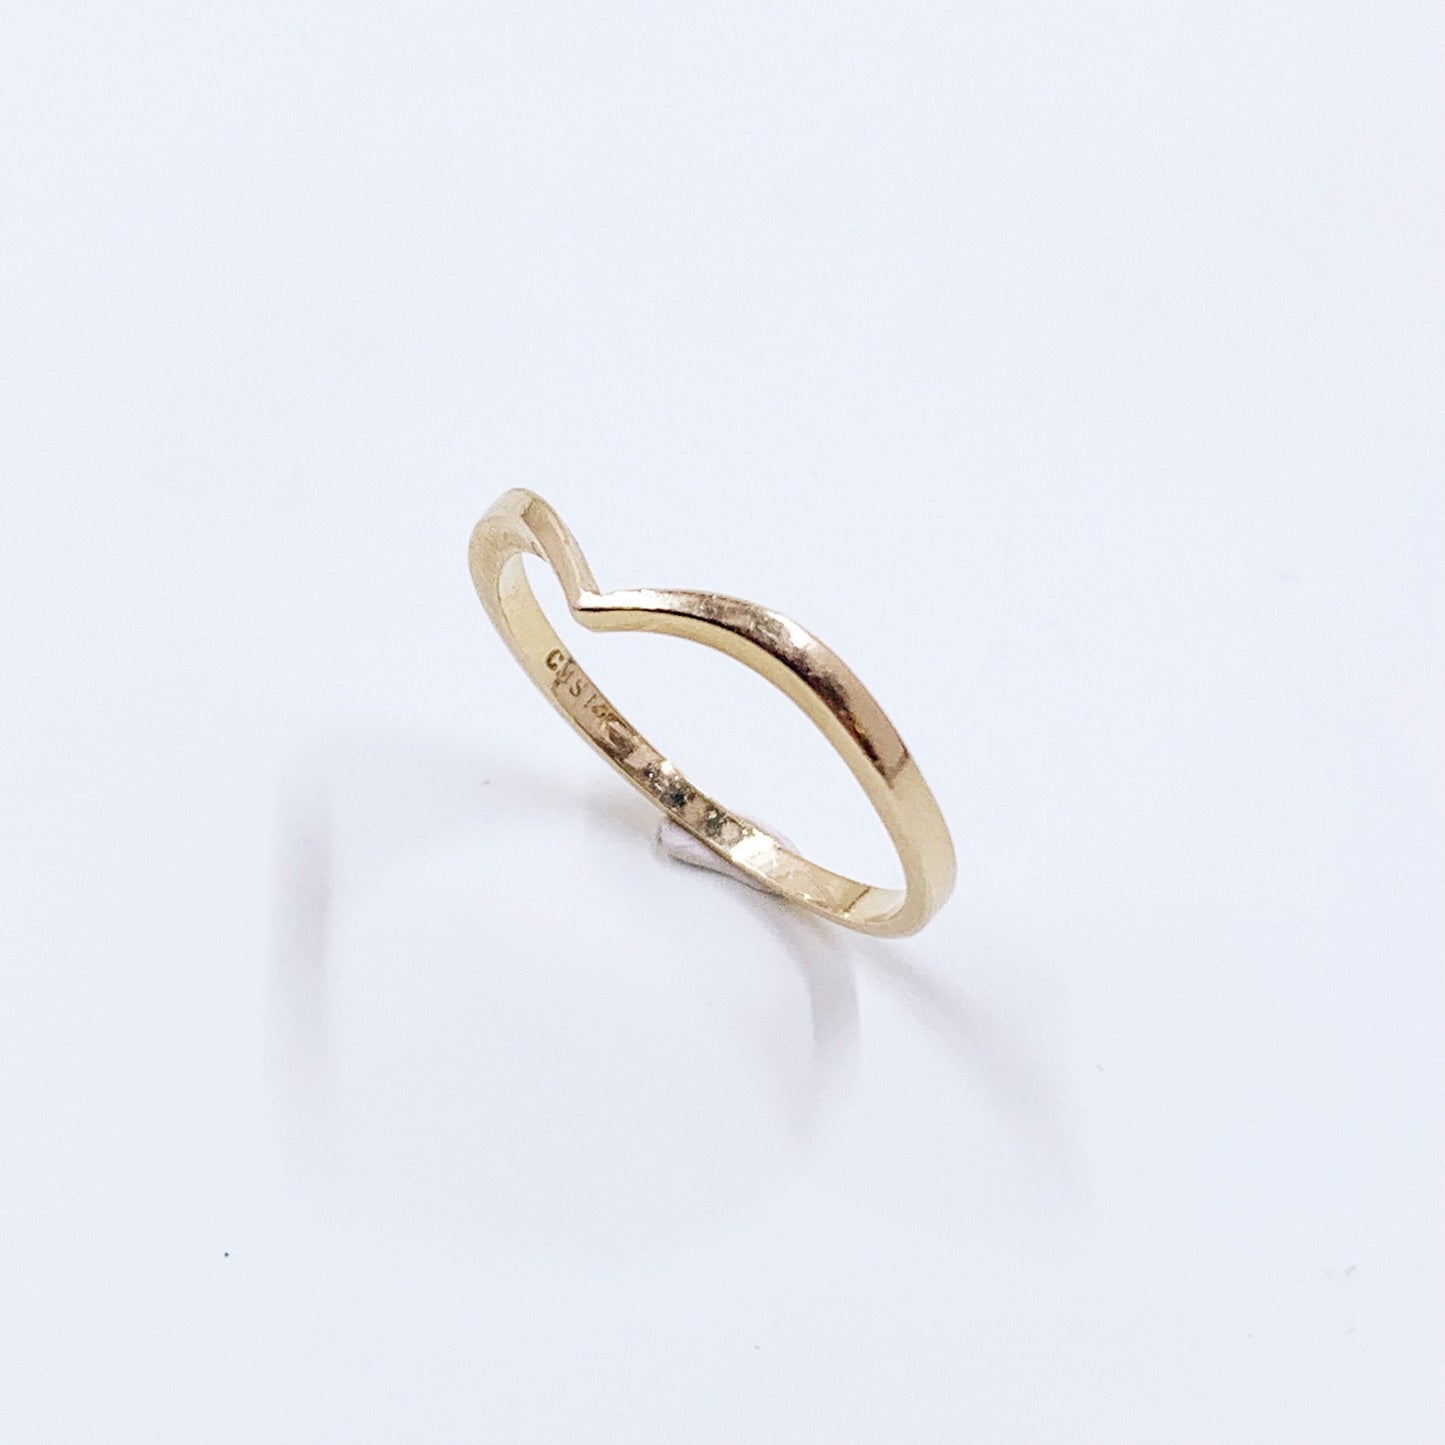 Estate 14k Gold Chevron Ring | 14k Gold Stacking Ring | Size 7 Ring